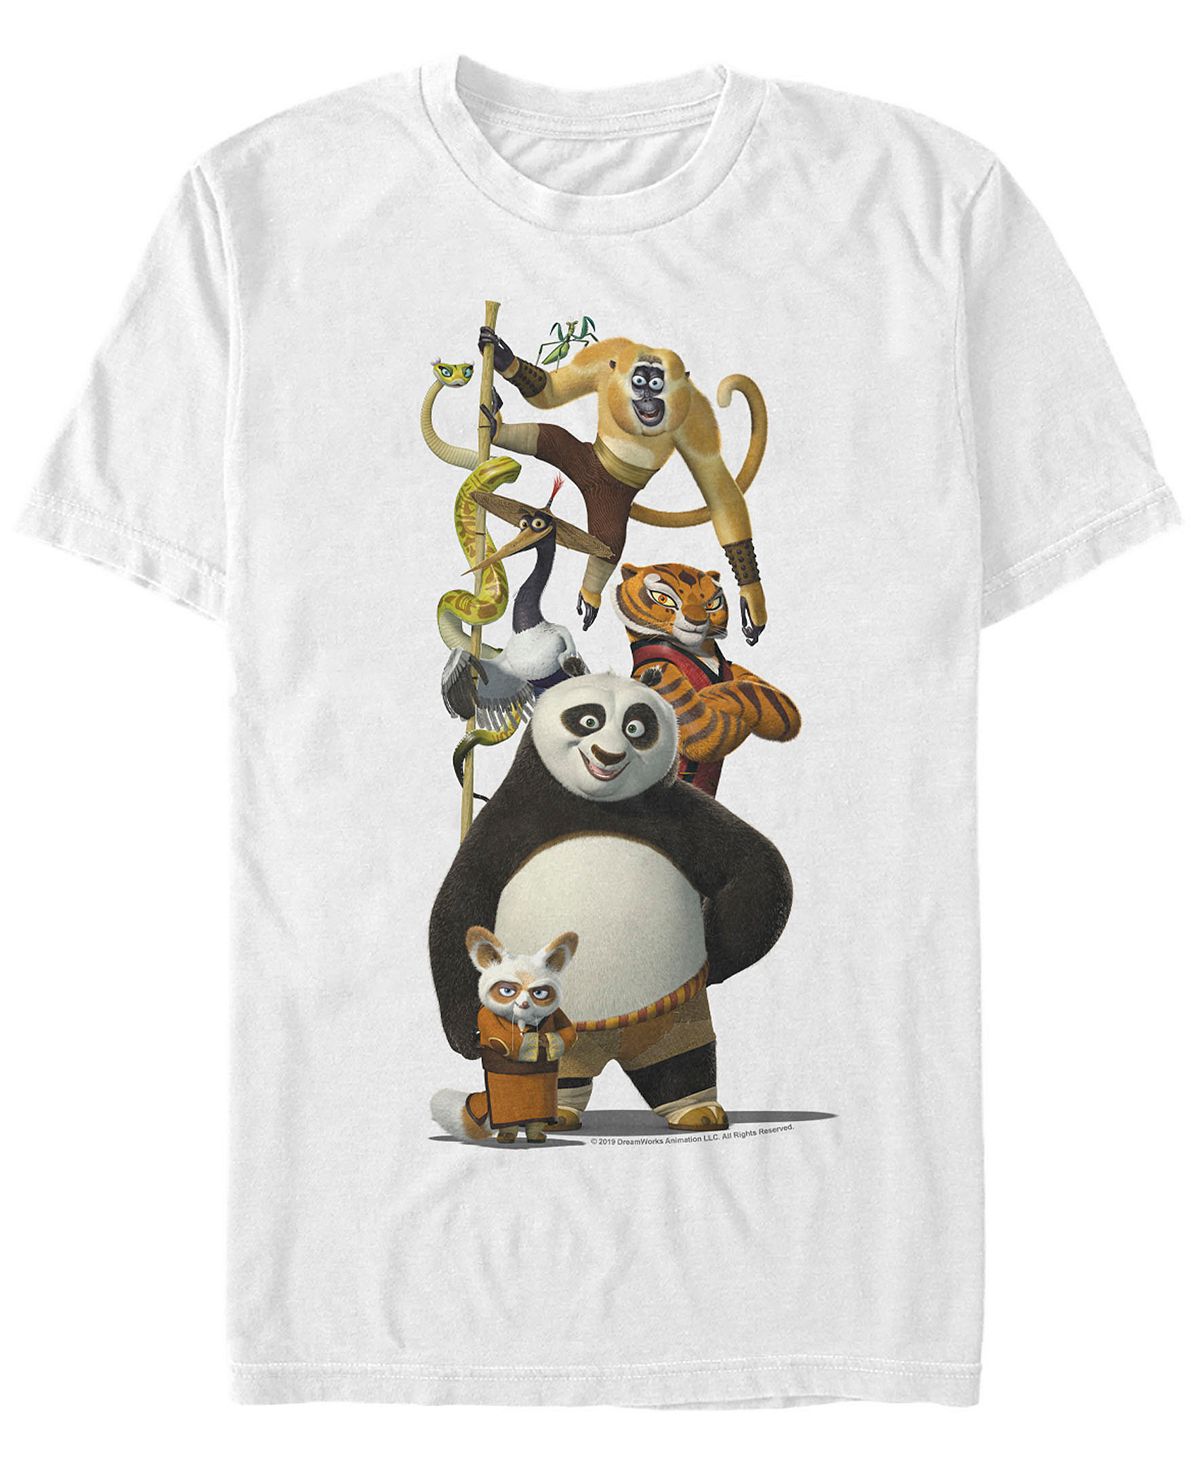 Мужская футболка с короткими рукавами по и друзья кунг-фу панда Fifth Sun, белый футболки print bar кунг фу панда